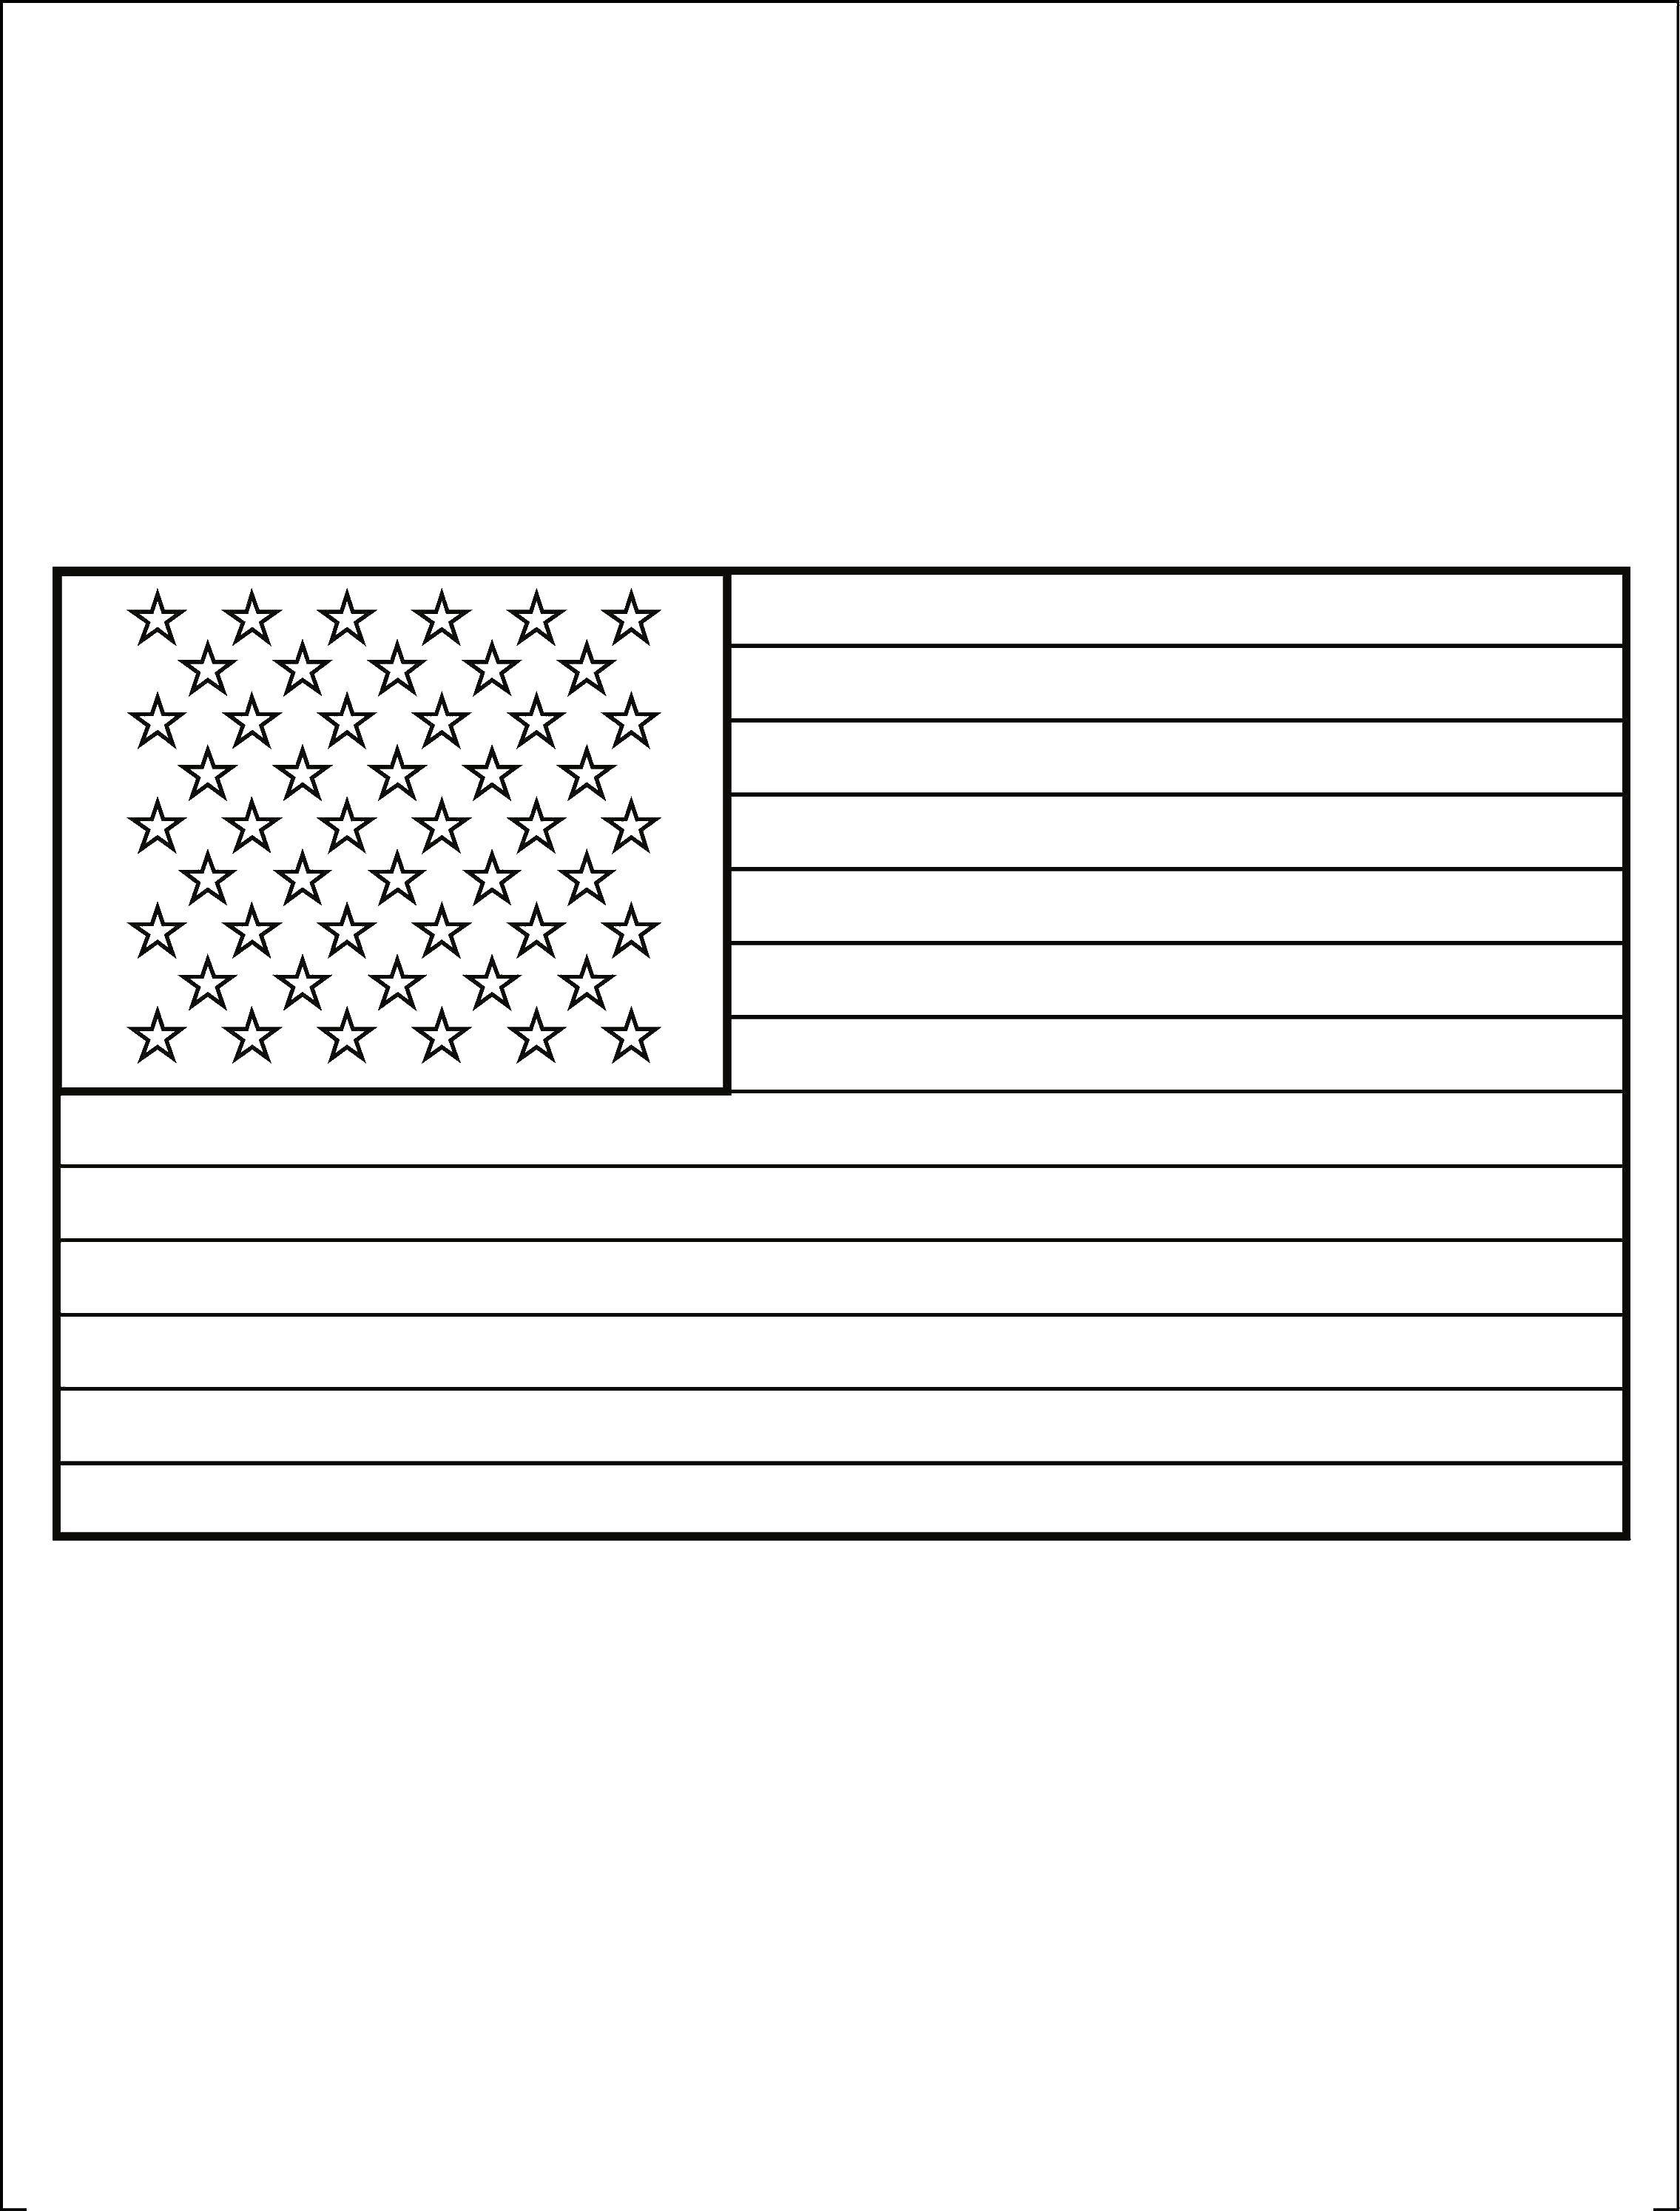 Флаг США — раскраска